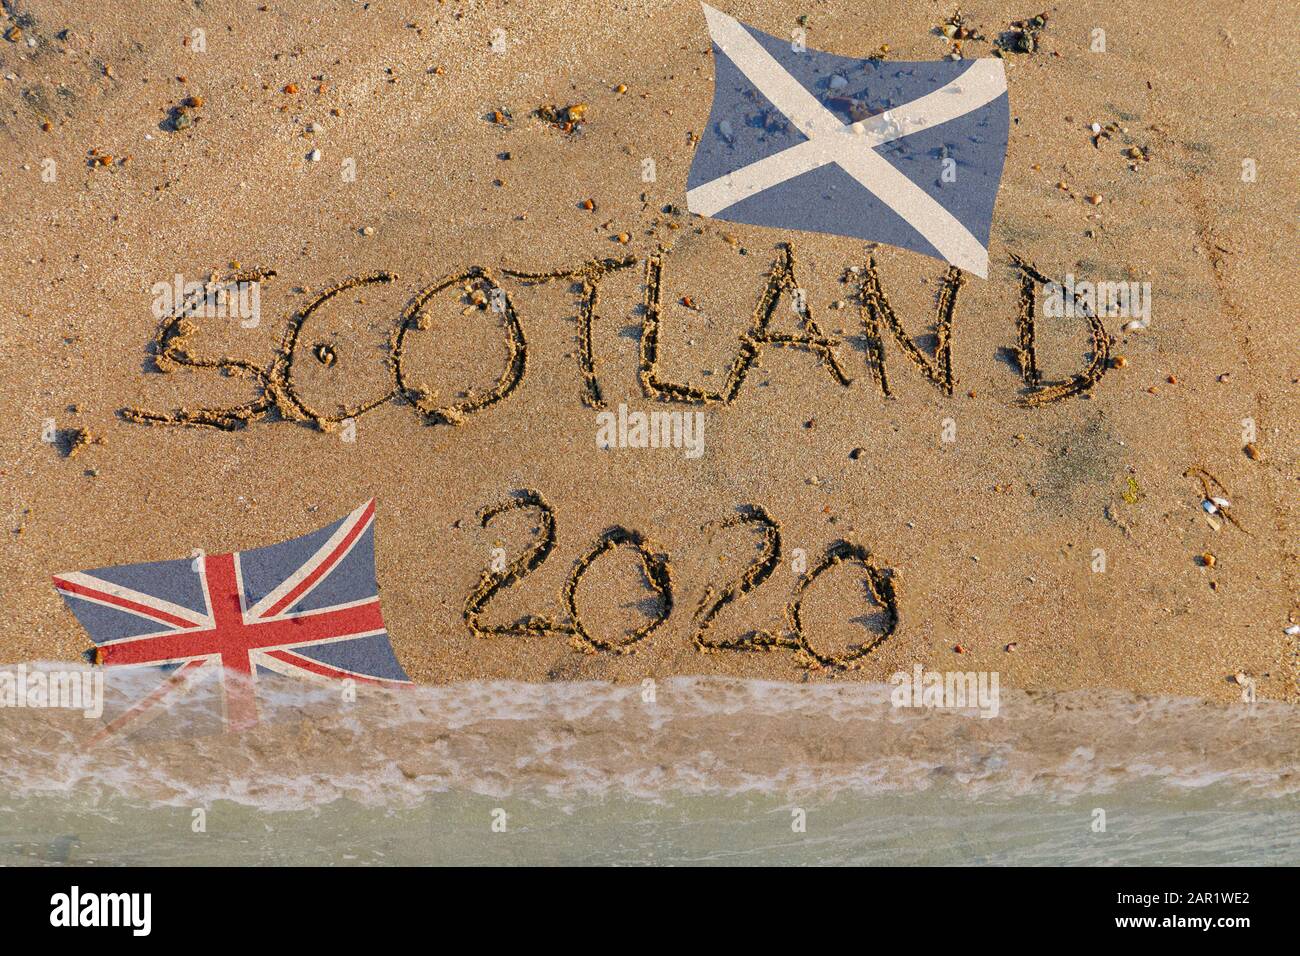 Brexit, Referendum, Scozia 2020 a Sand geschrieben, mit schottischer Flagge und Union Jack Foto Stock